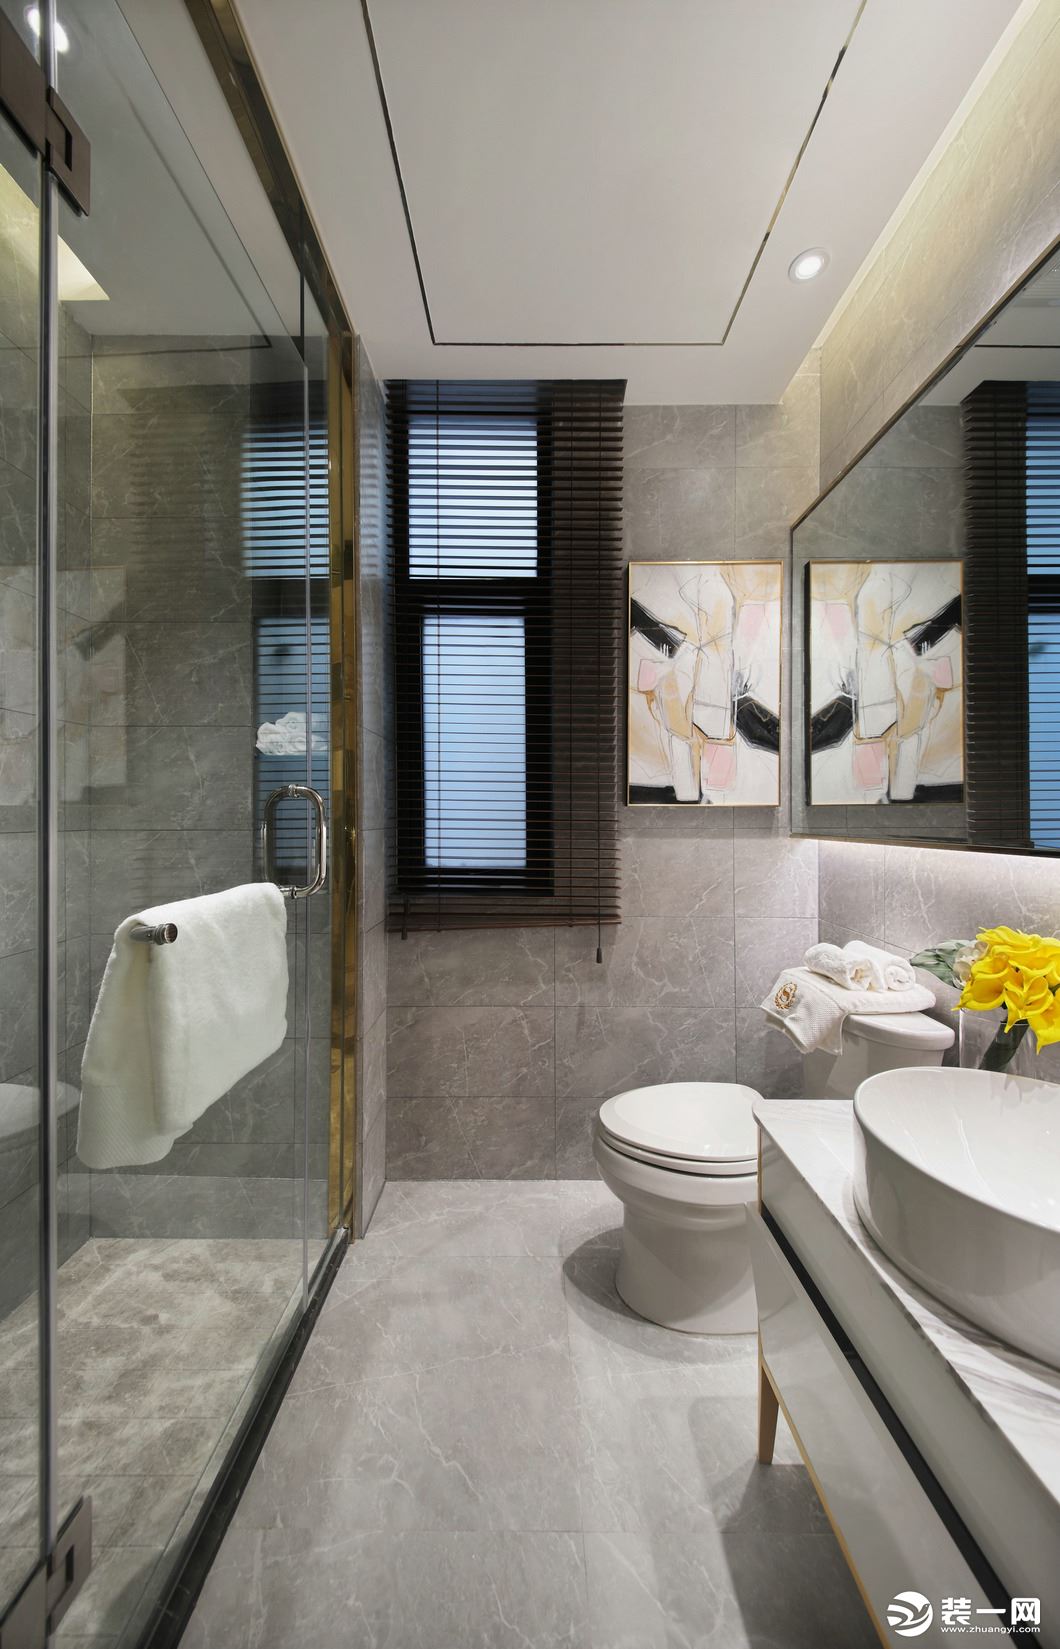 淋浴间的透明设计，既实现了干湿分离的功能区划分，又让卫生间显得更加通透明亮，有效缓解了干区湿区分割。